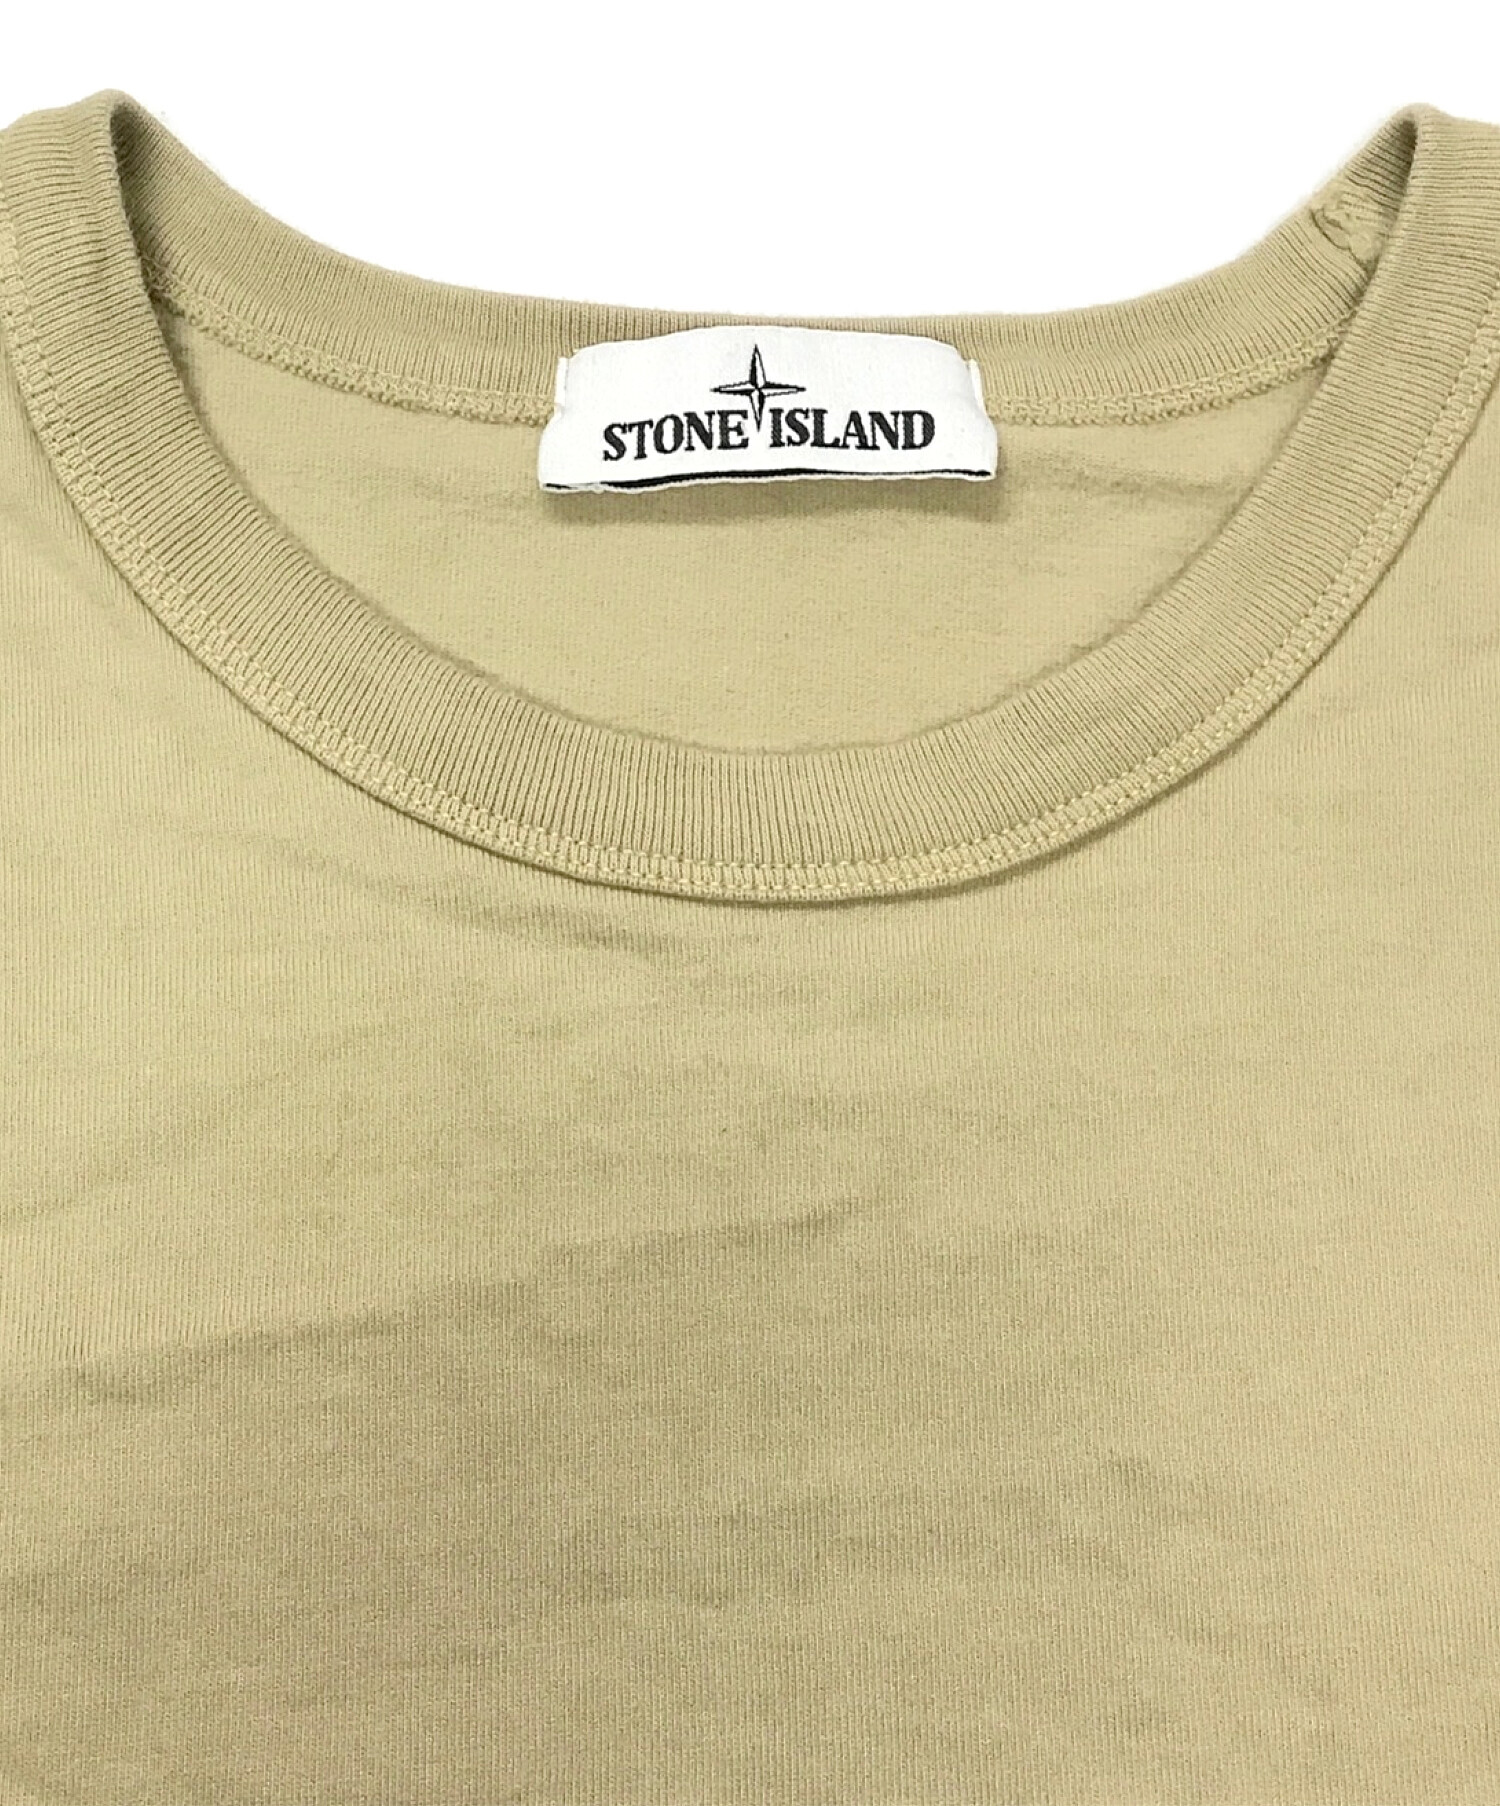 STONE ISLAND (ストーンアイランド) ロングスリーブTシャツ ベージュ サイズ:XL